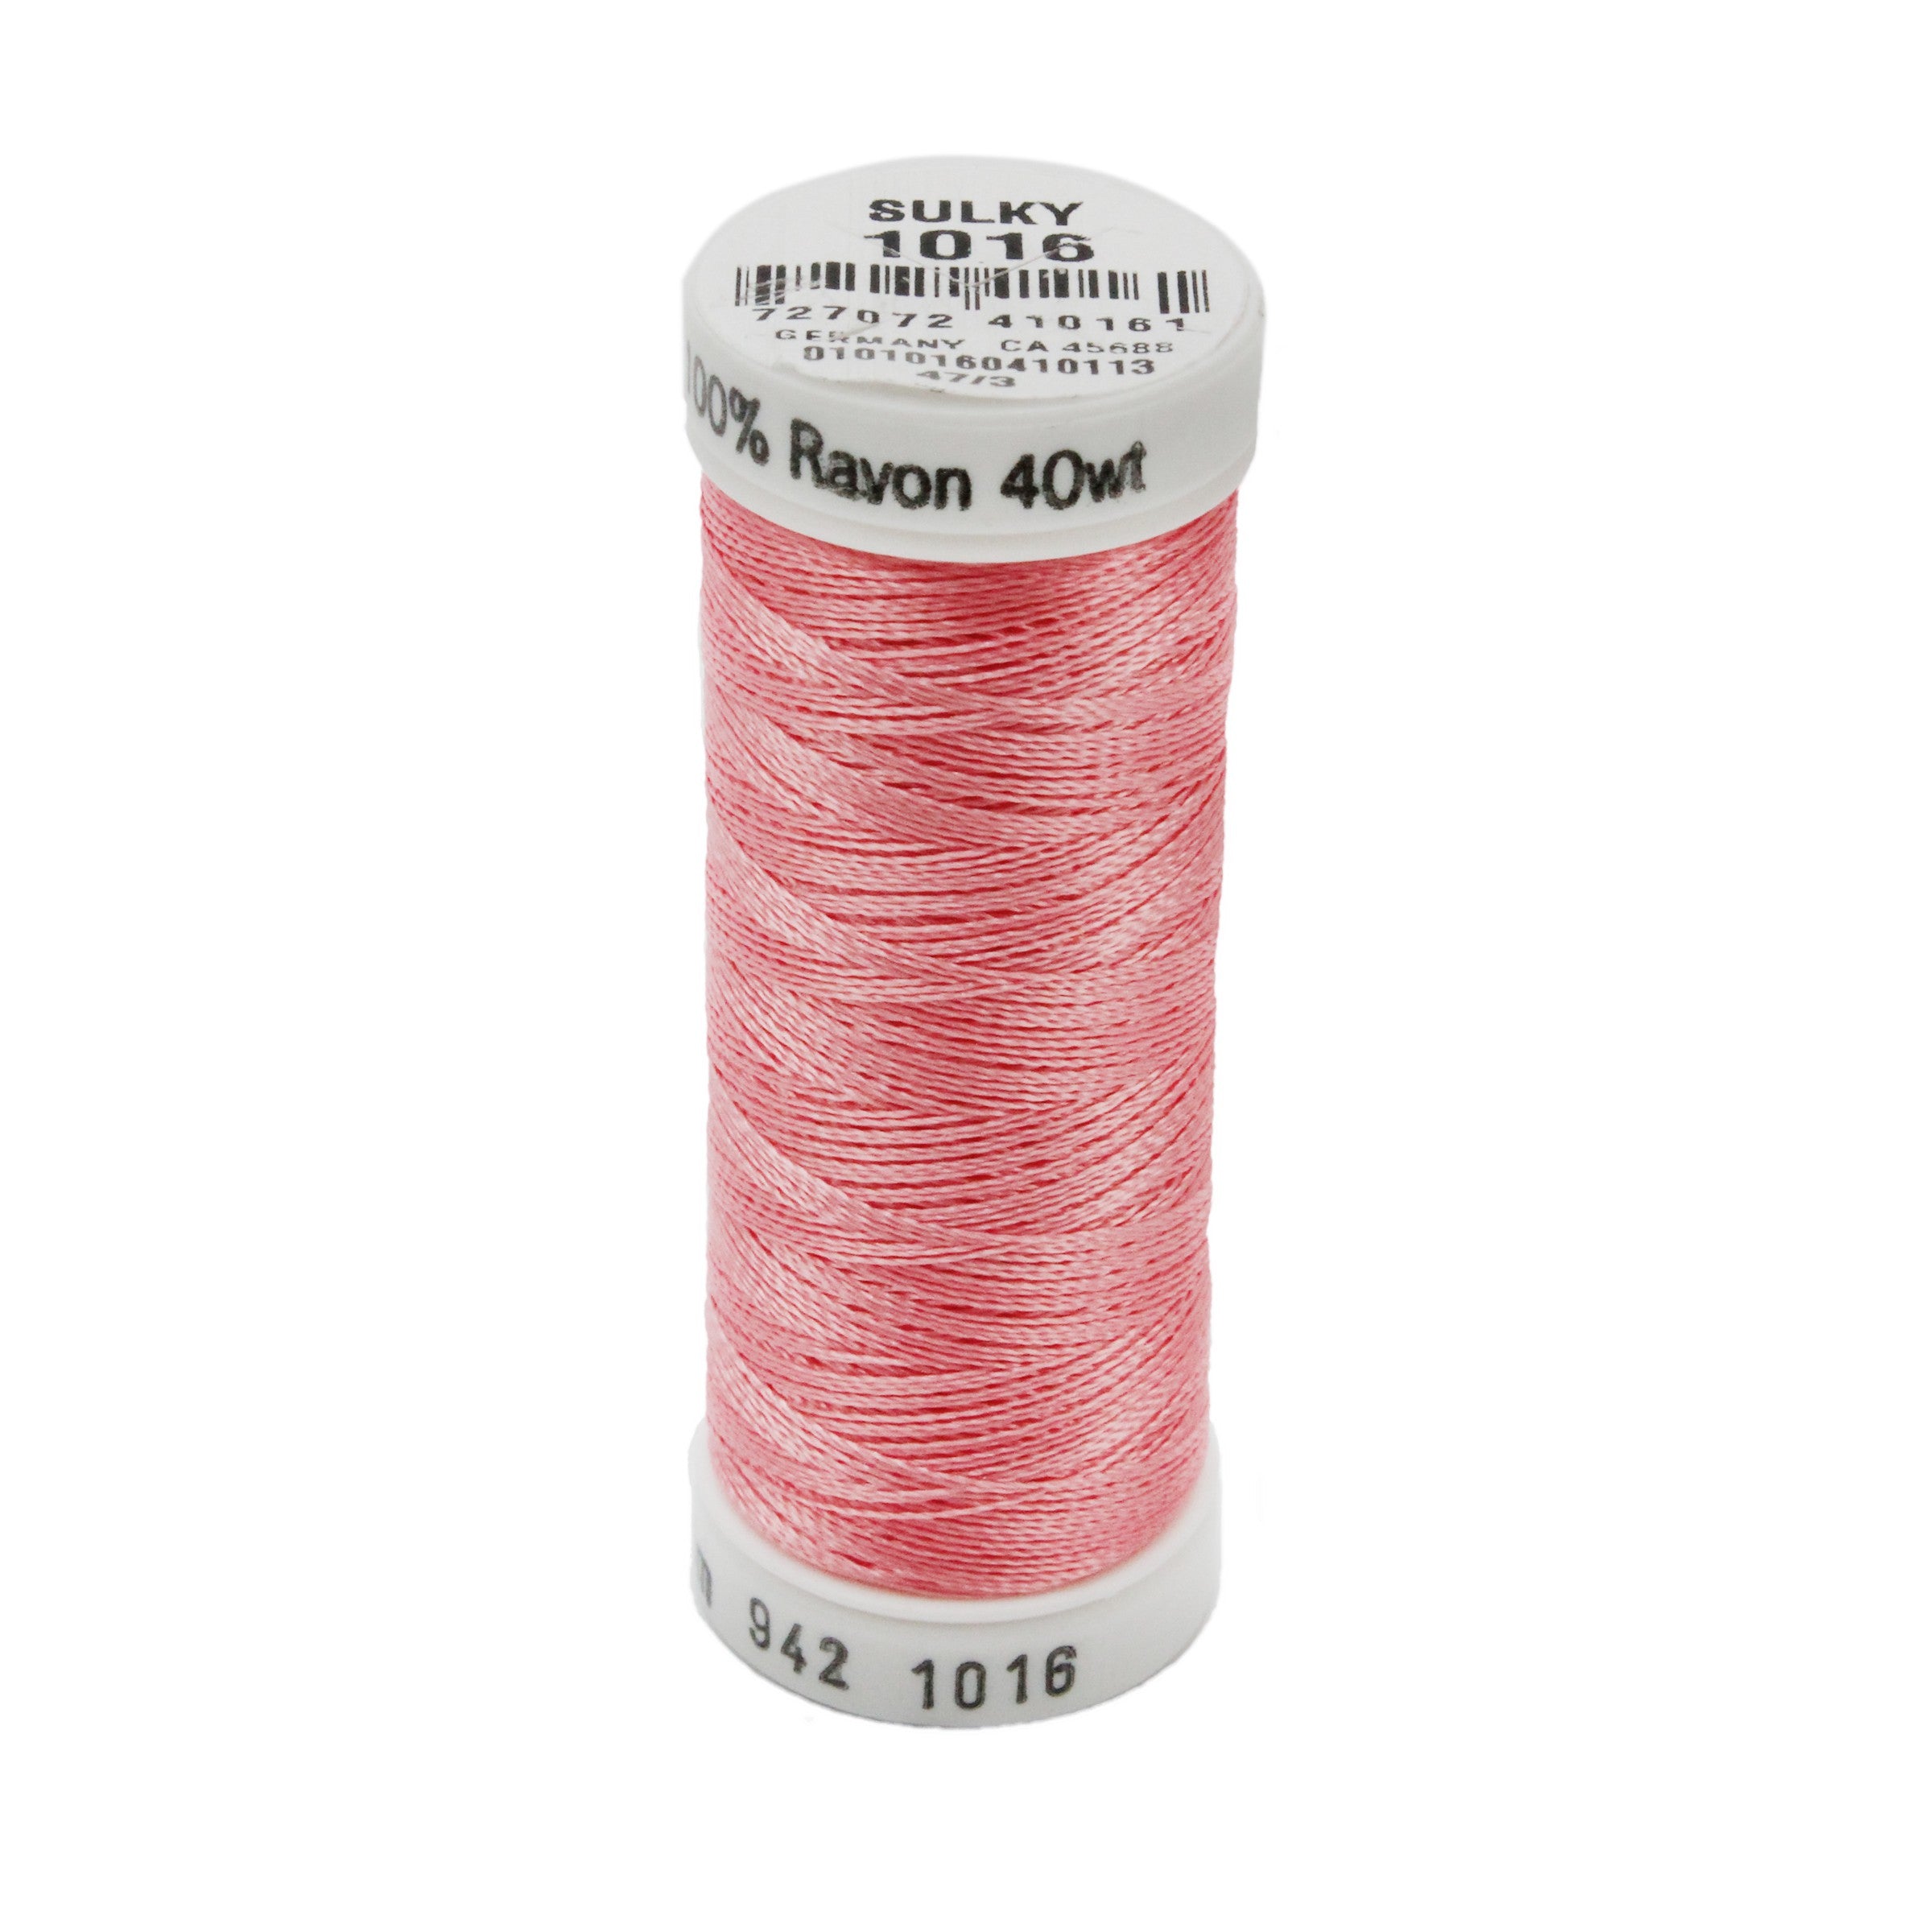 Sulky Rayon 40wt Thread 1016 Pastel Coral  250yd Spool